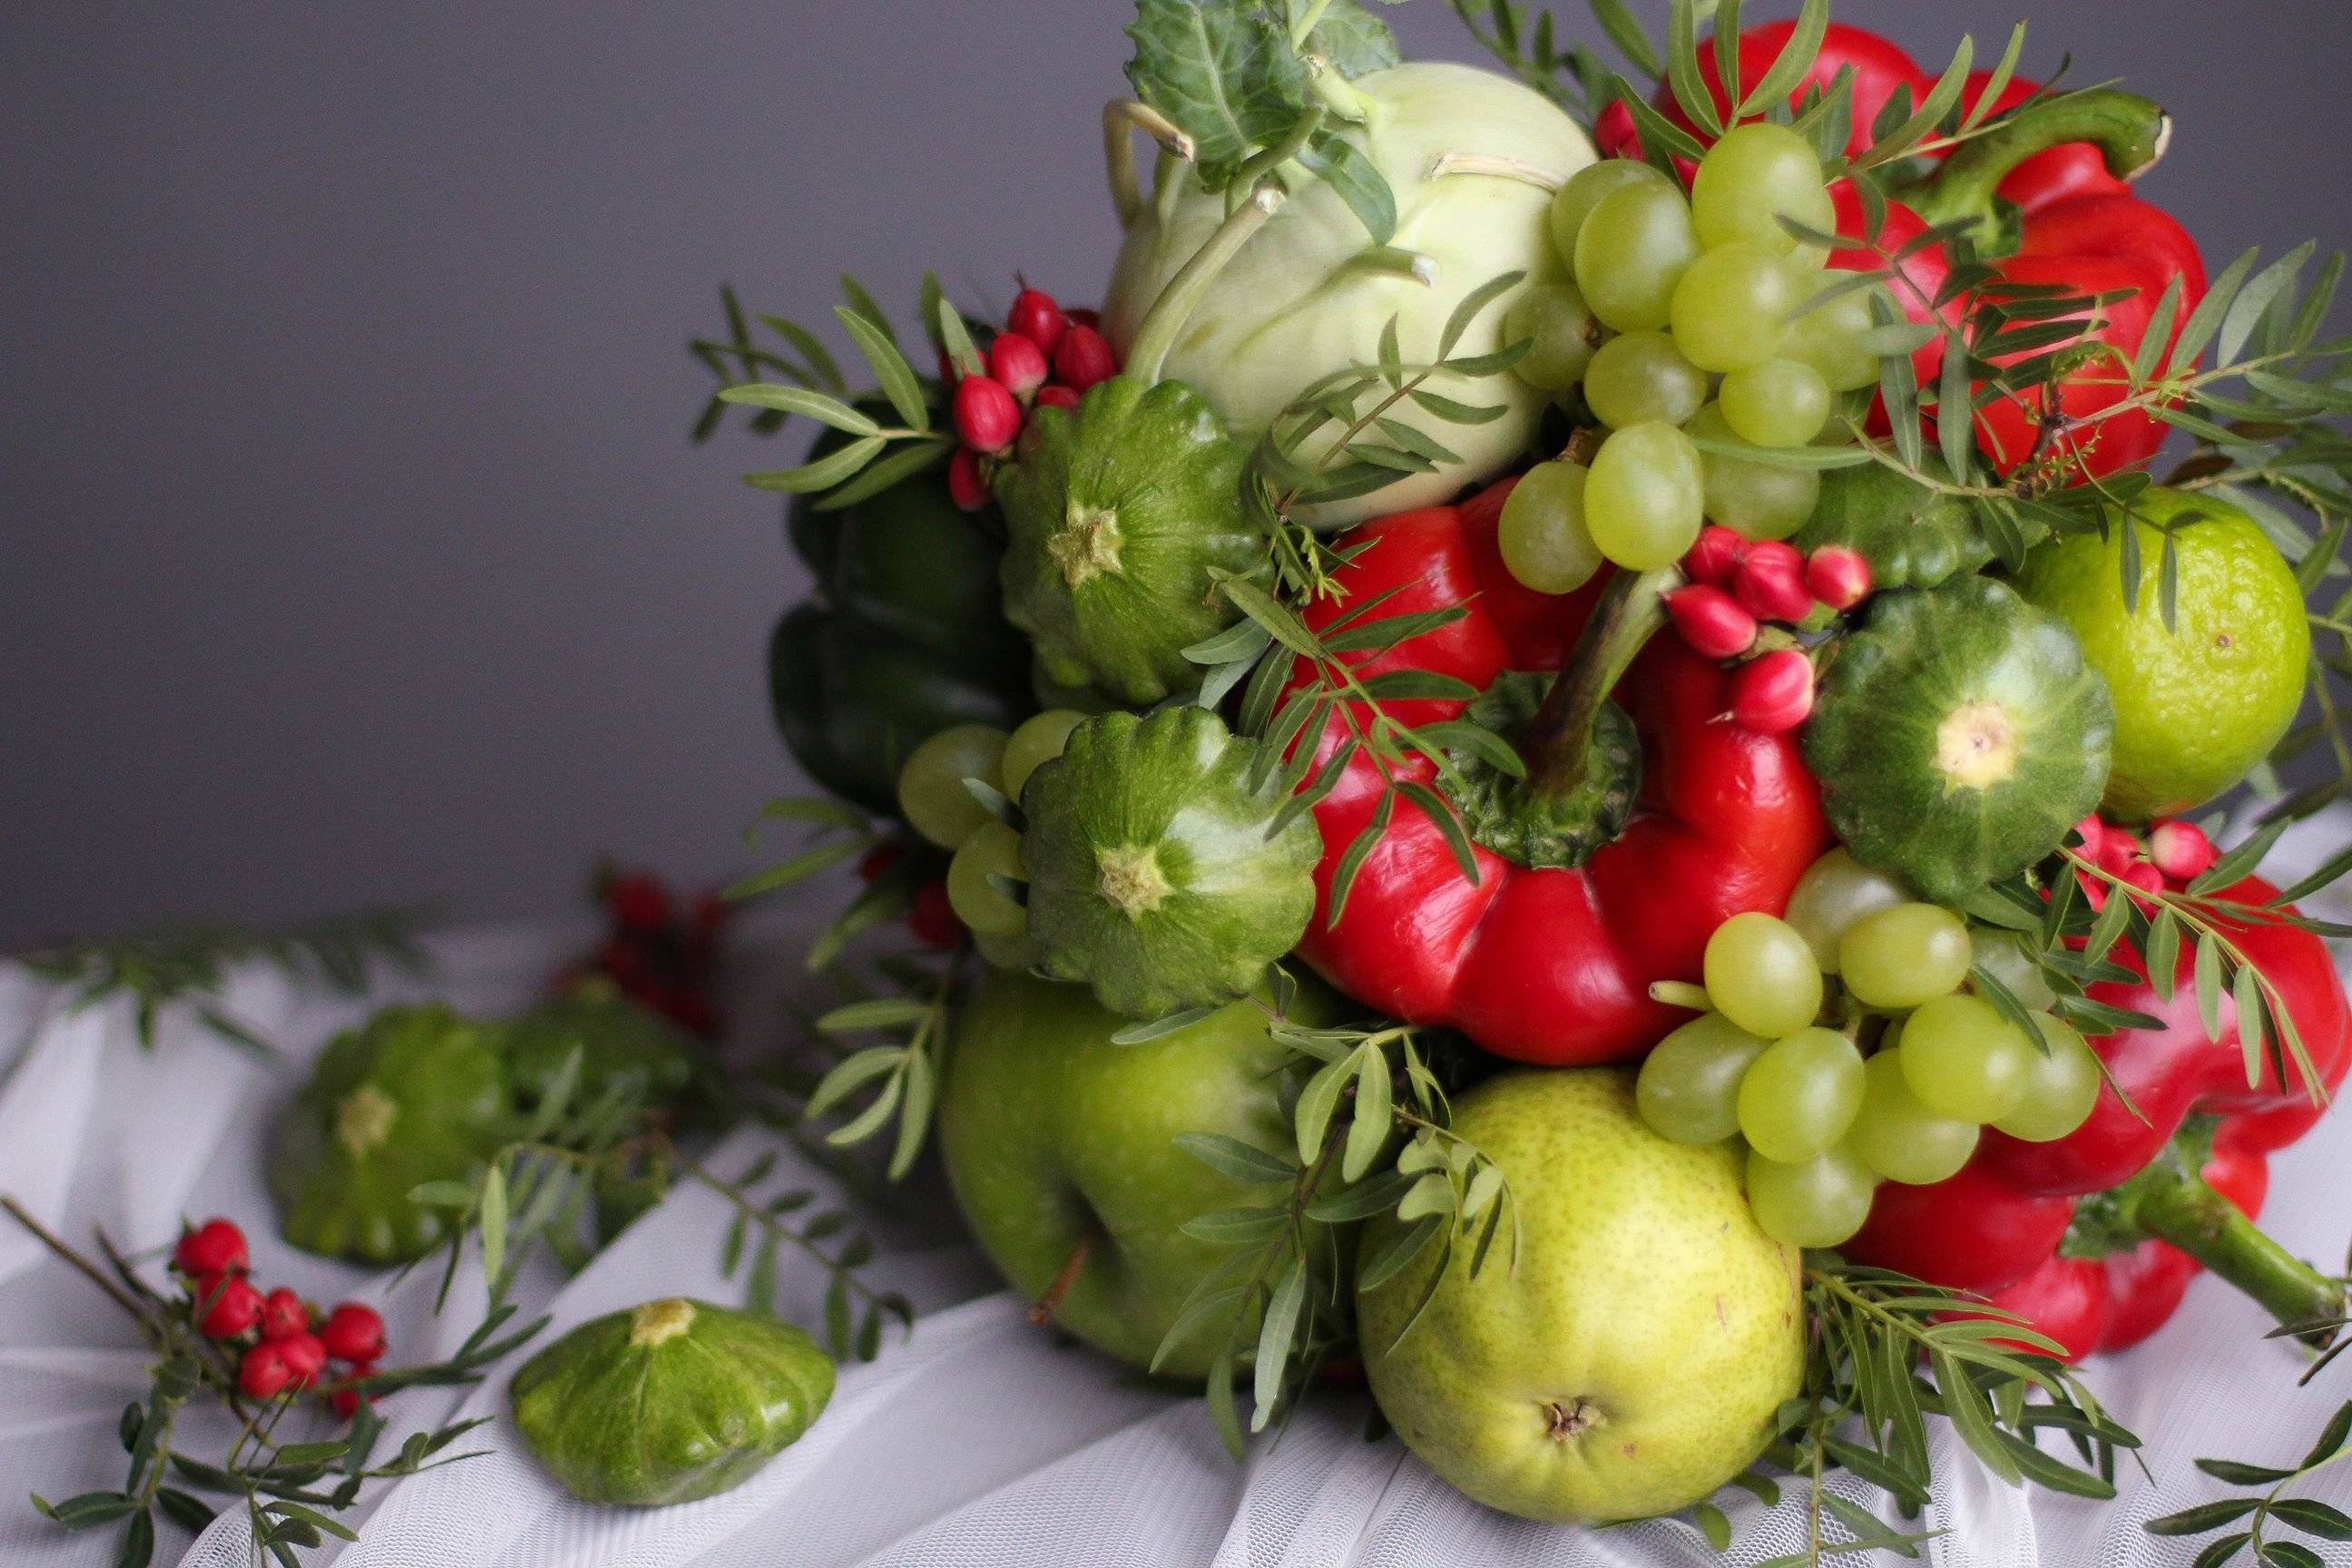 50 лучших бизнес-идей, связанных с фруктами и овощами